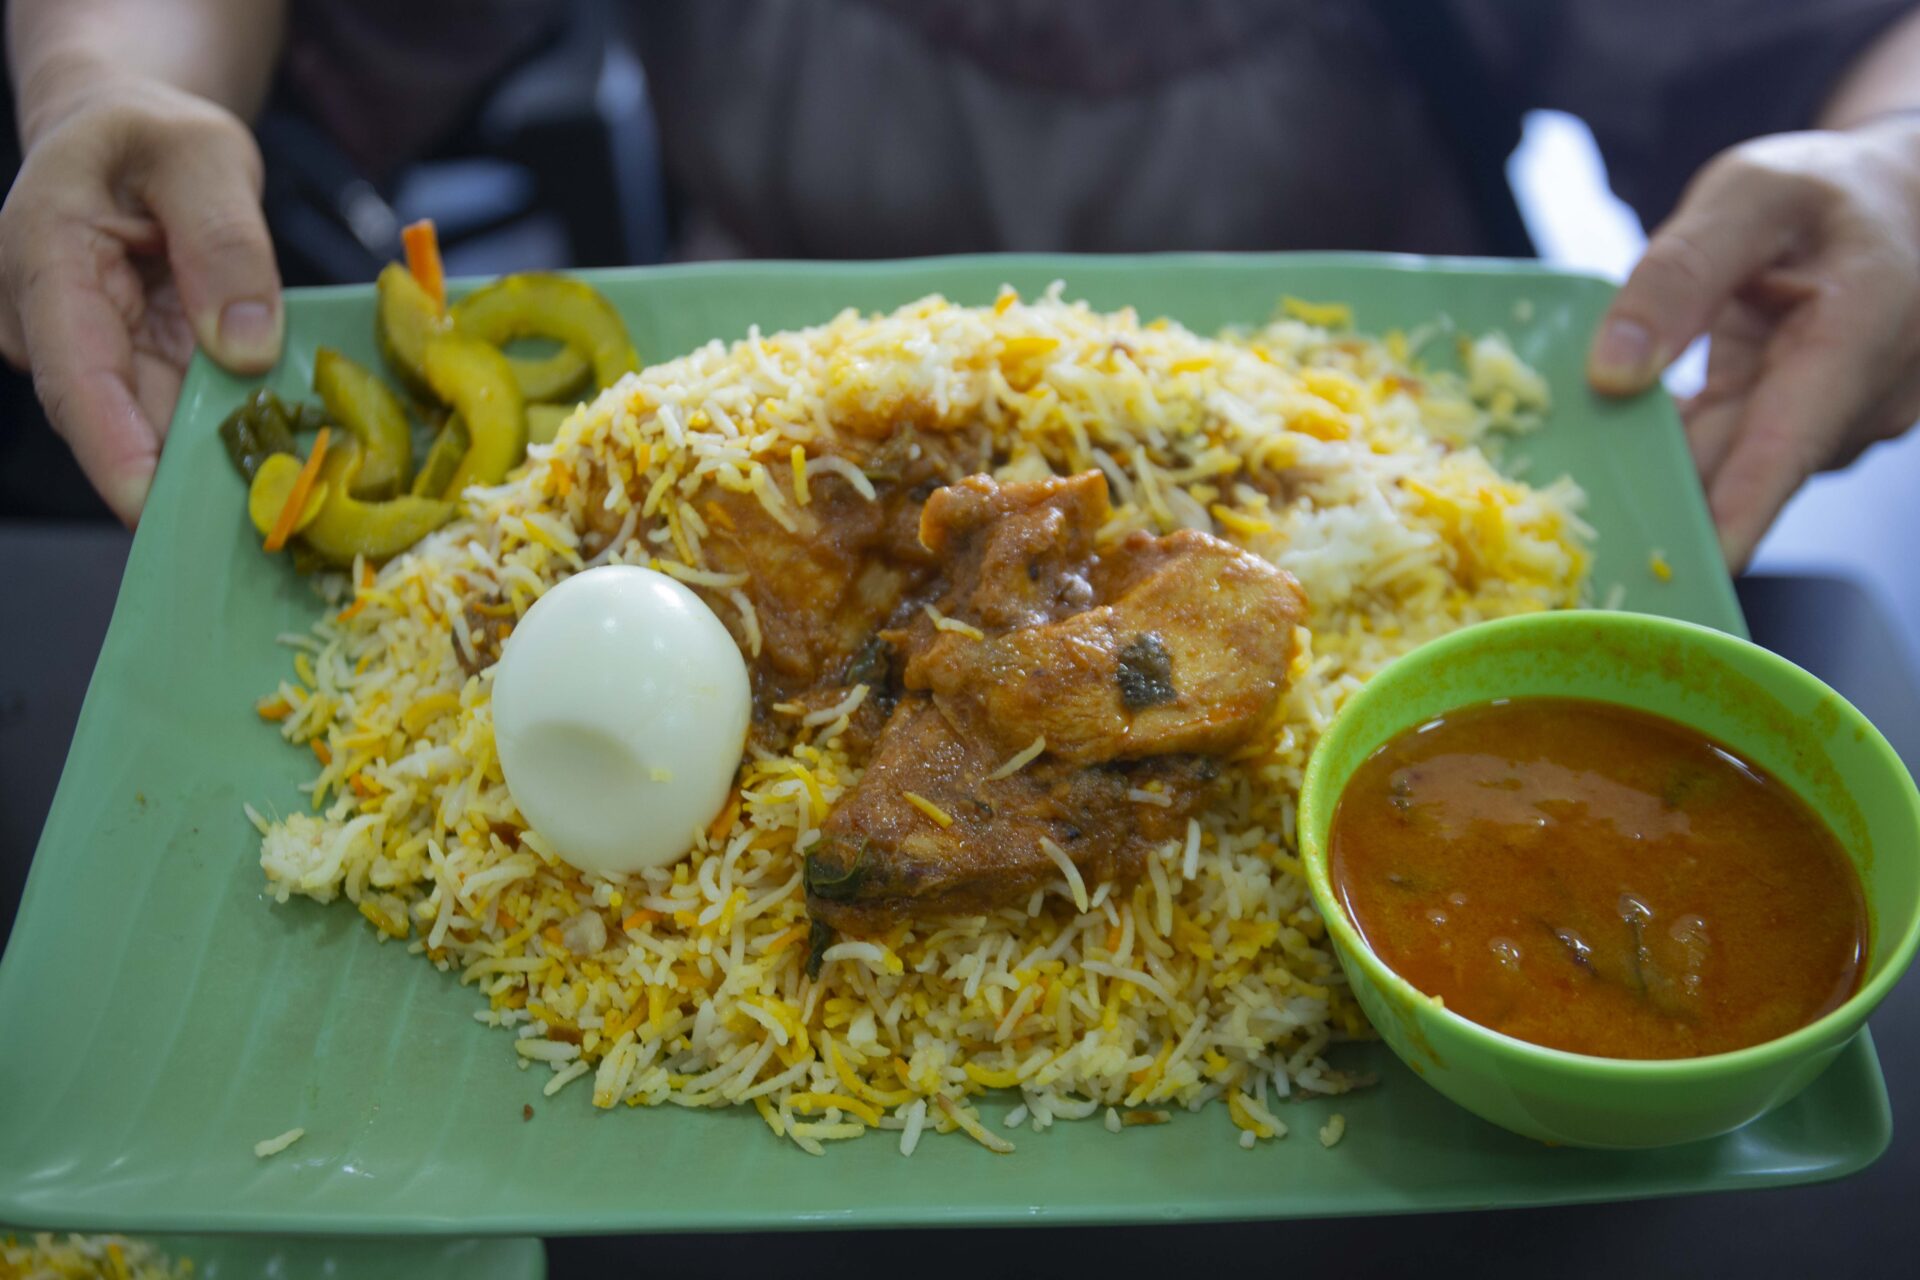 Koothurar Nasi Briyani - Chicken Briyani